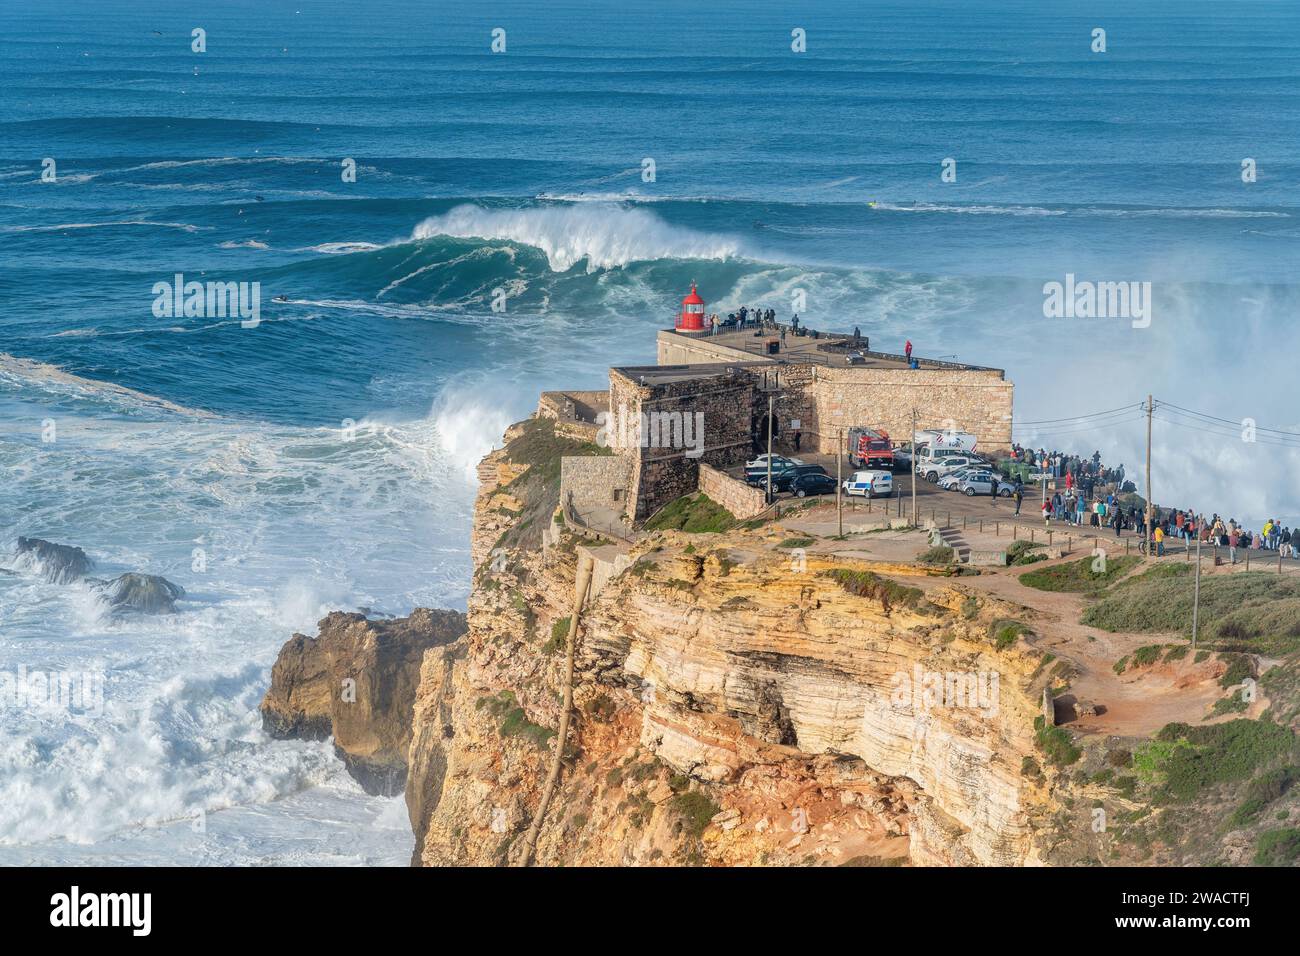 Onde che si infrangono vicino al forte di Sao Miguel Arcanjo Lighthouse a Nazare, Portogallo, famoso per i surfisti per avere le onde più grandi del mondo. Foto Stock